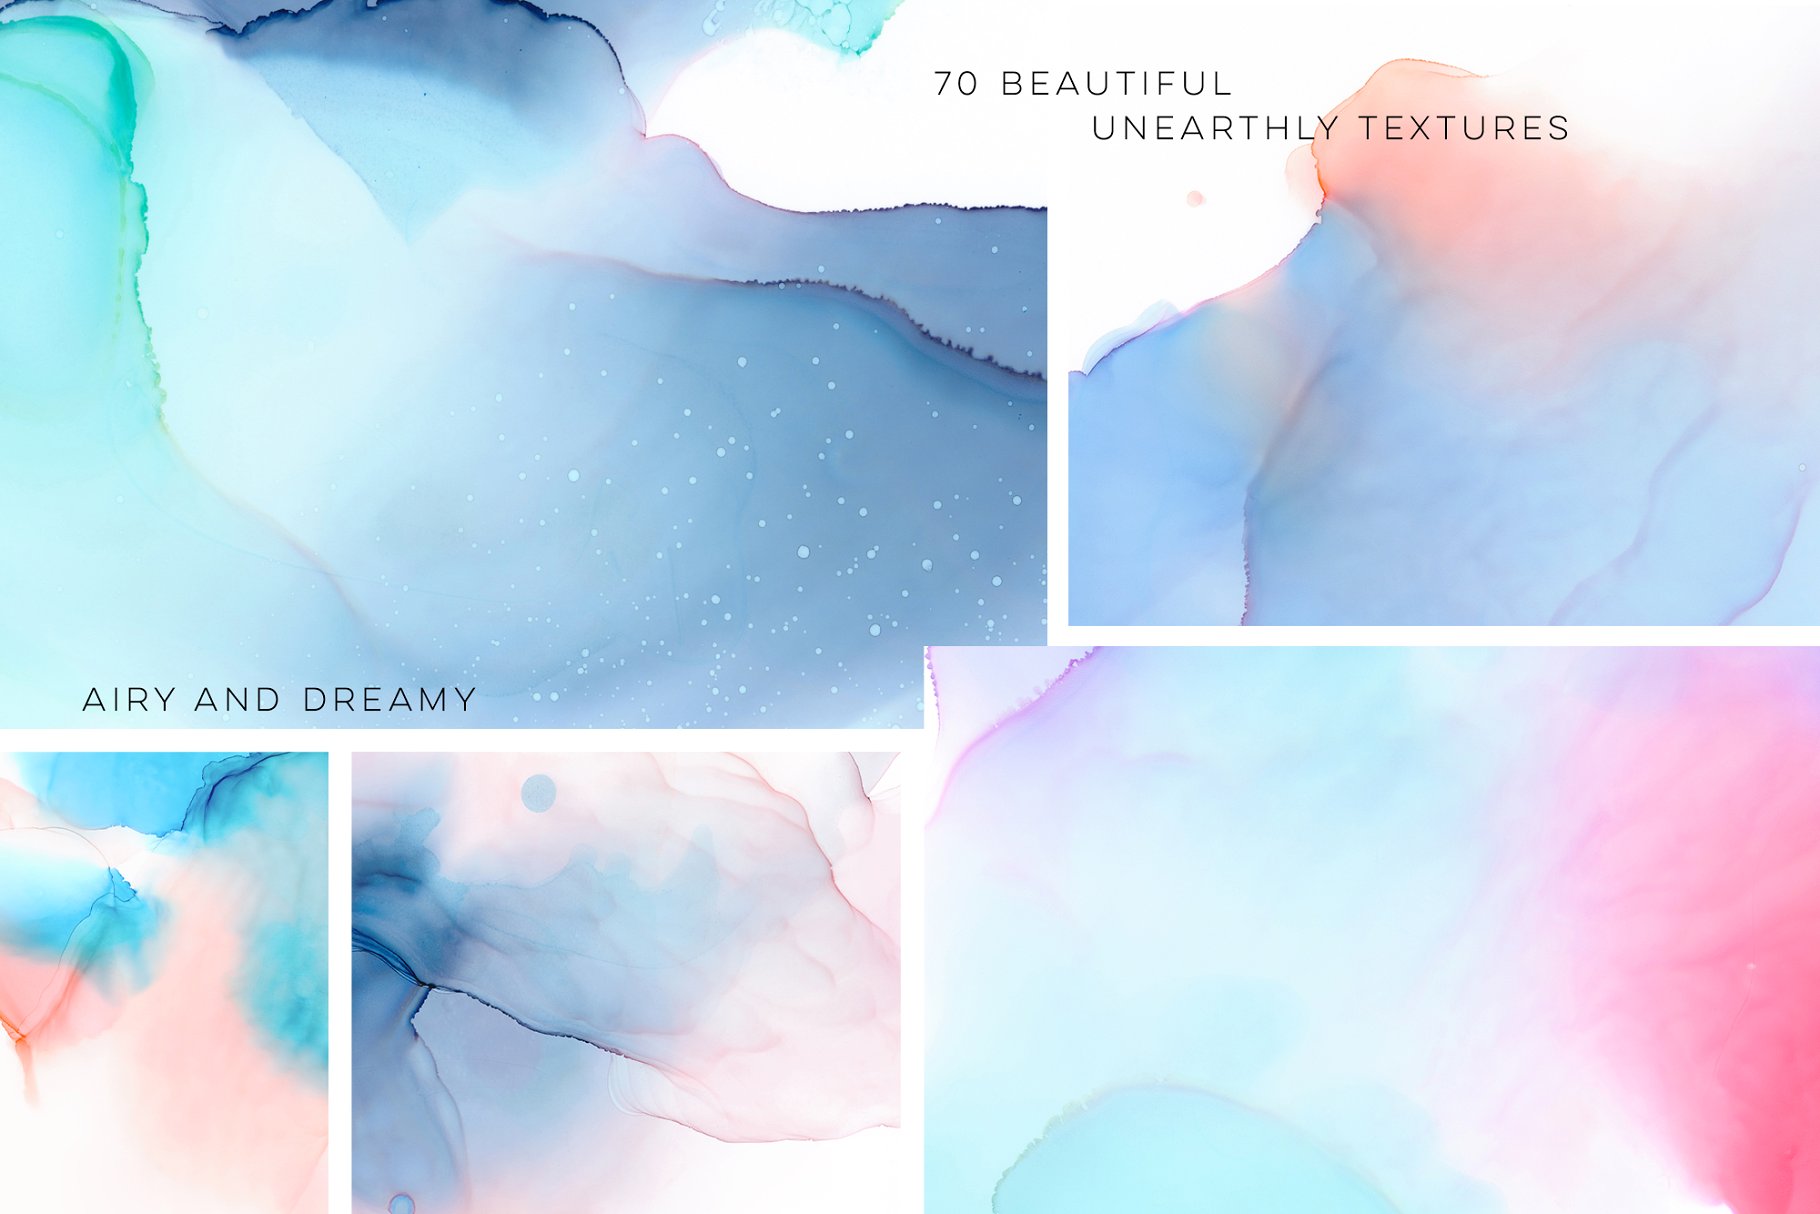 如漂浮的云朵墨水纹理合集 Ethereal Ink Texture Collection插图(1)